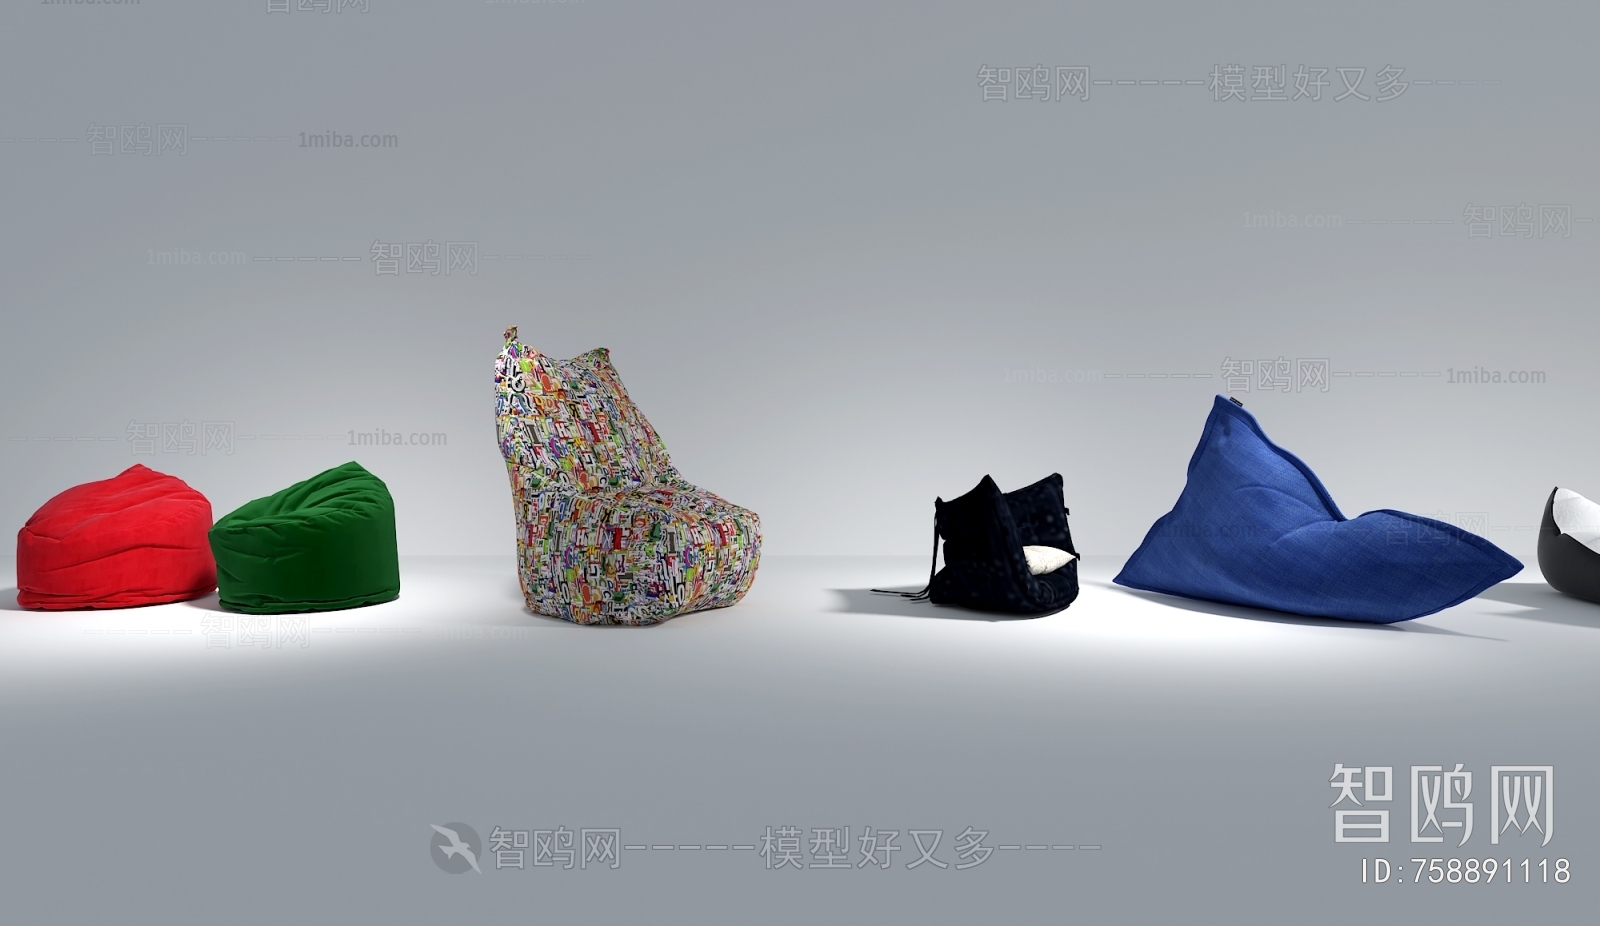 现代懒人沙发组合3D模型下载